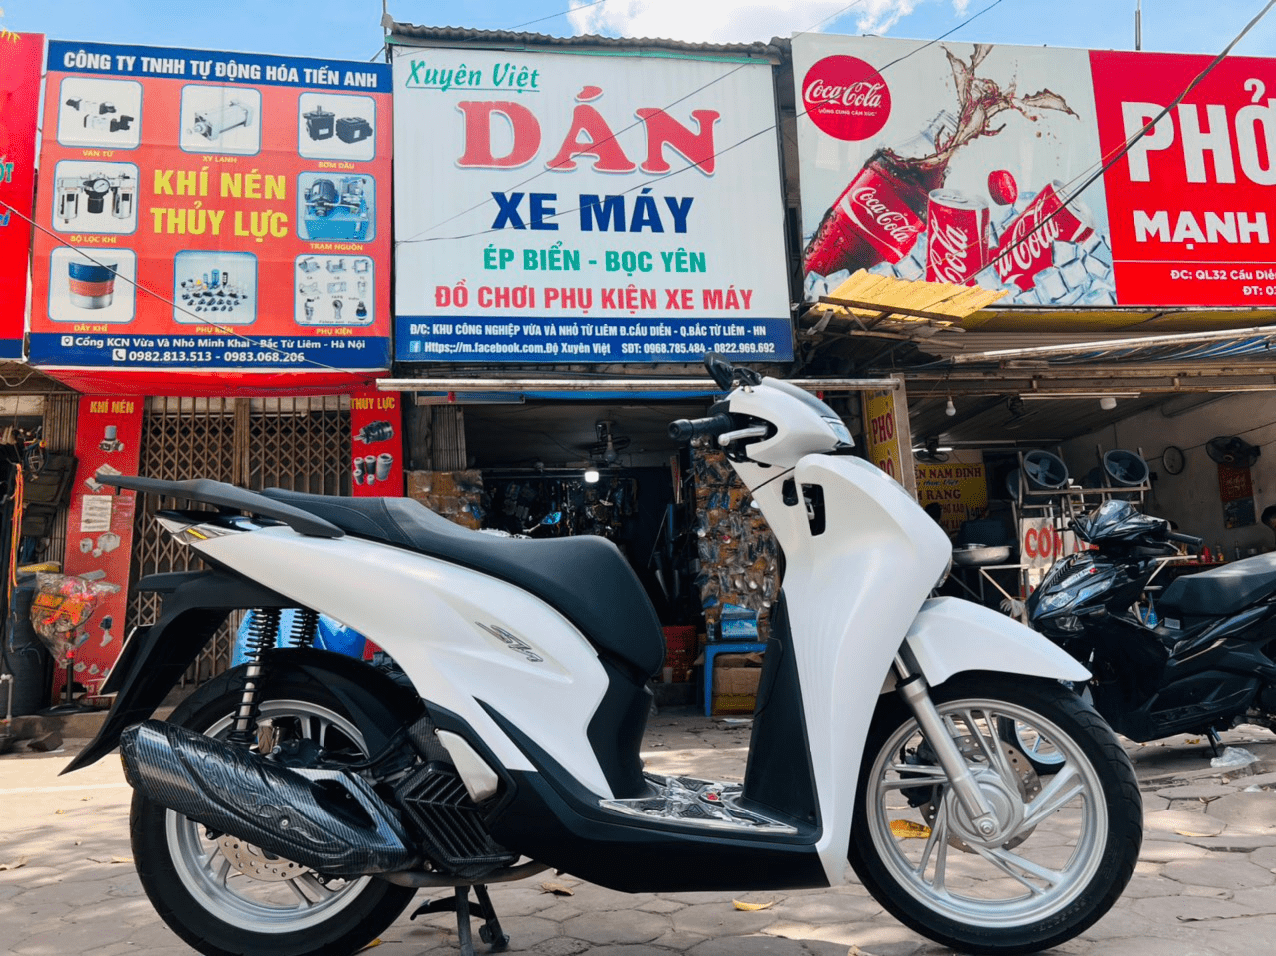 Xuyên Việt - Cửa Hàng Dán, Độ, Đồ Chơi Phụ Kiện Xe Máy Uy Tín Tại Hà Nội